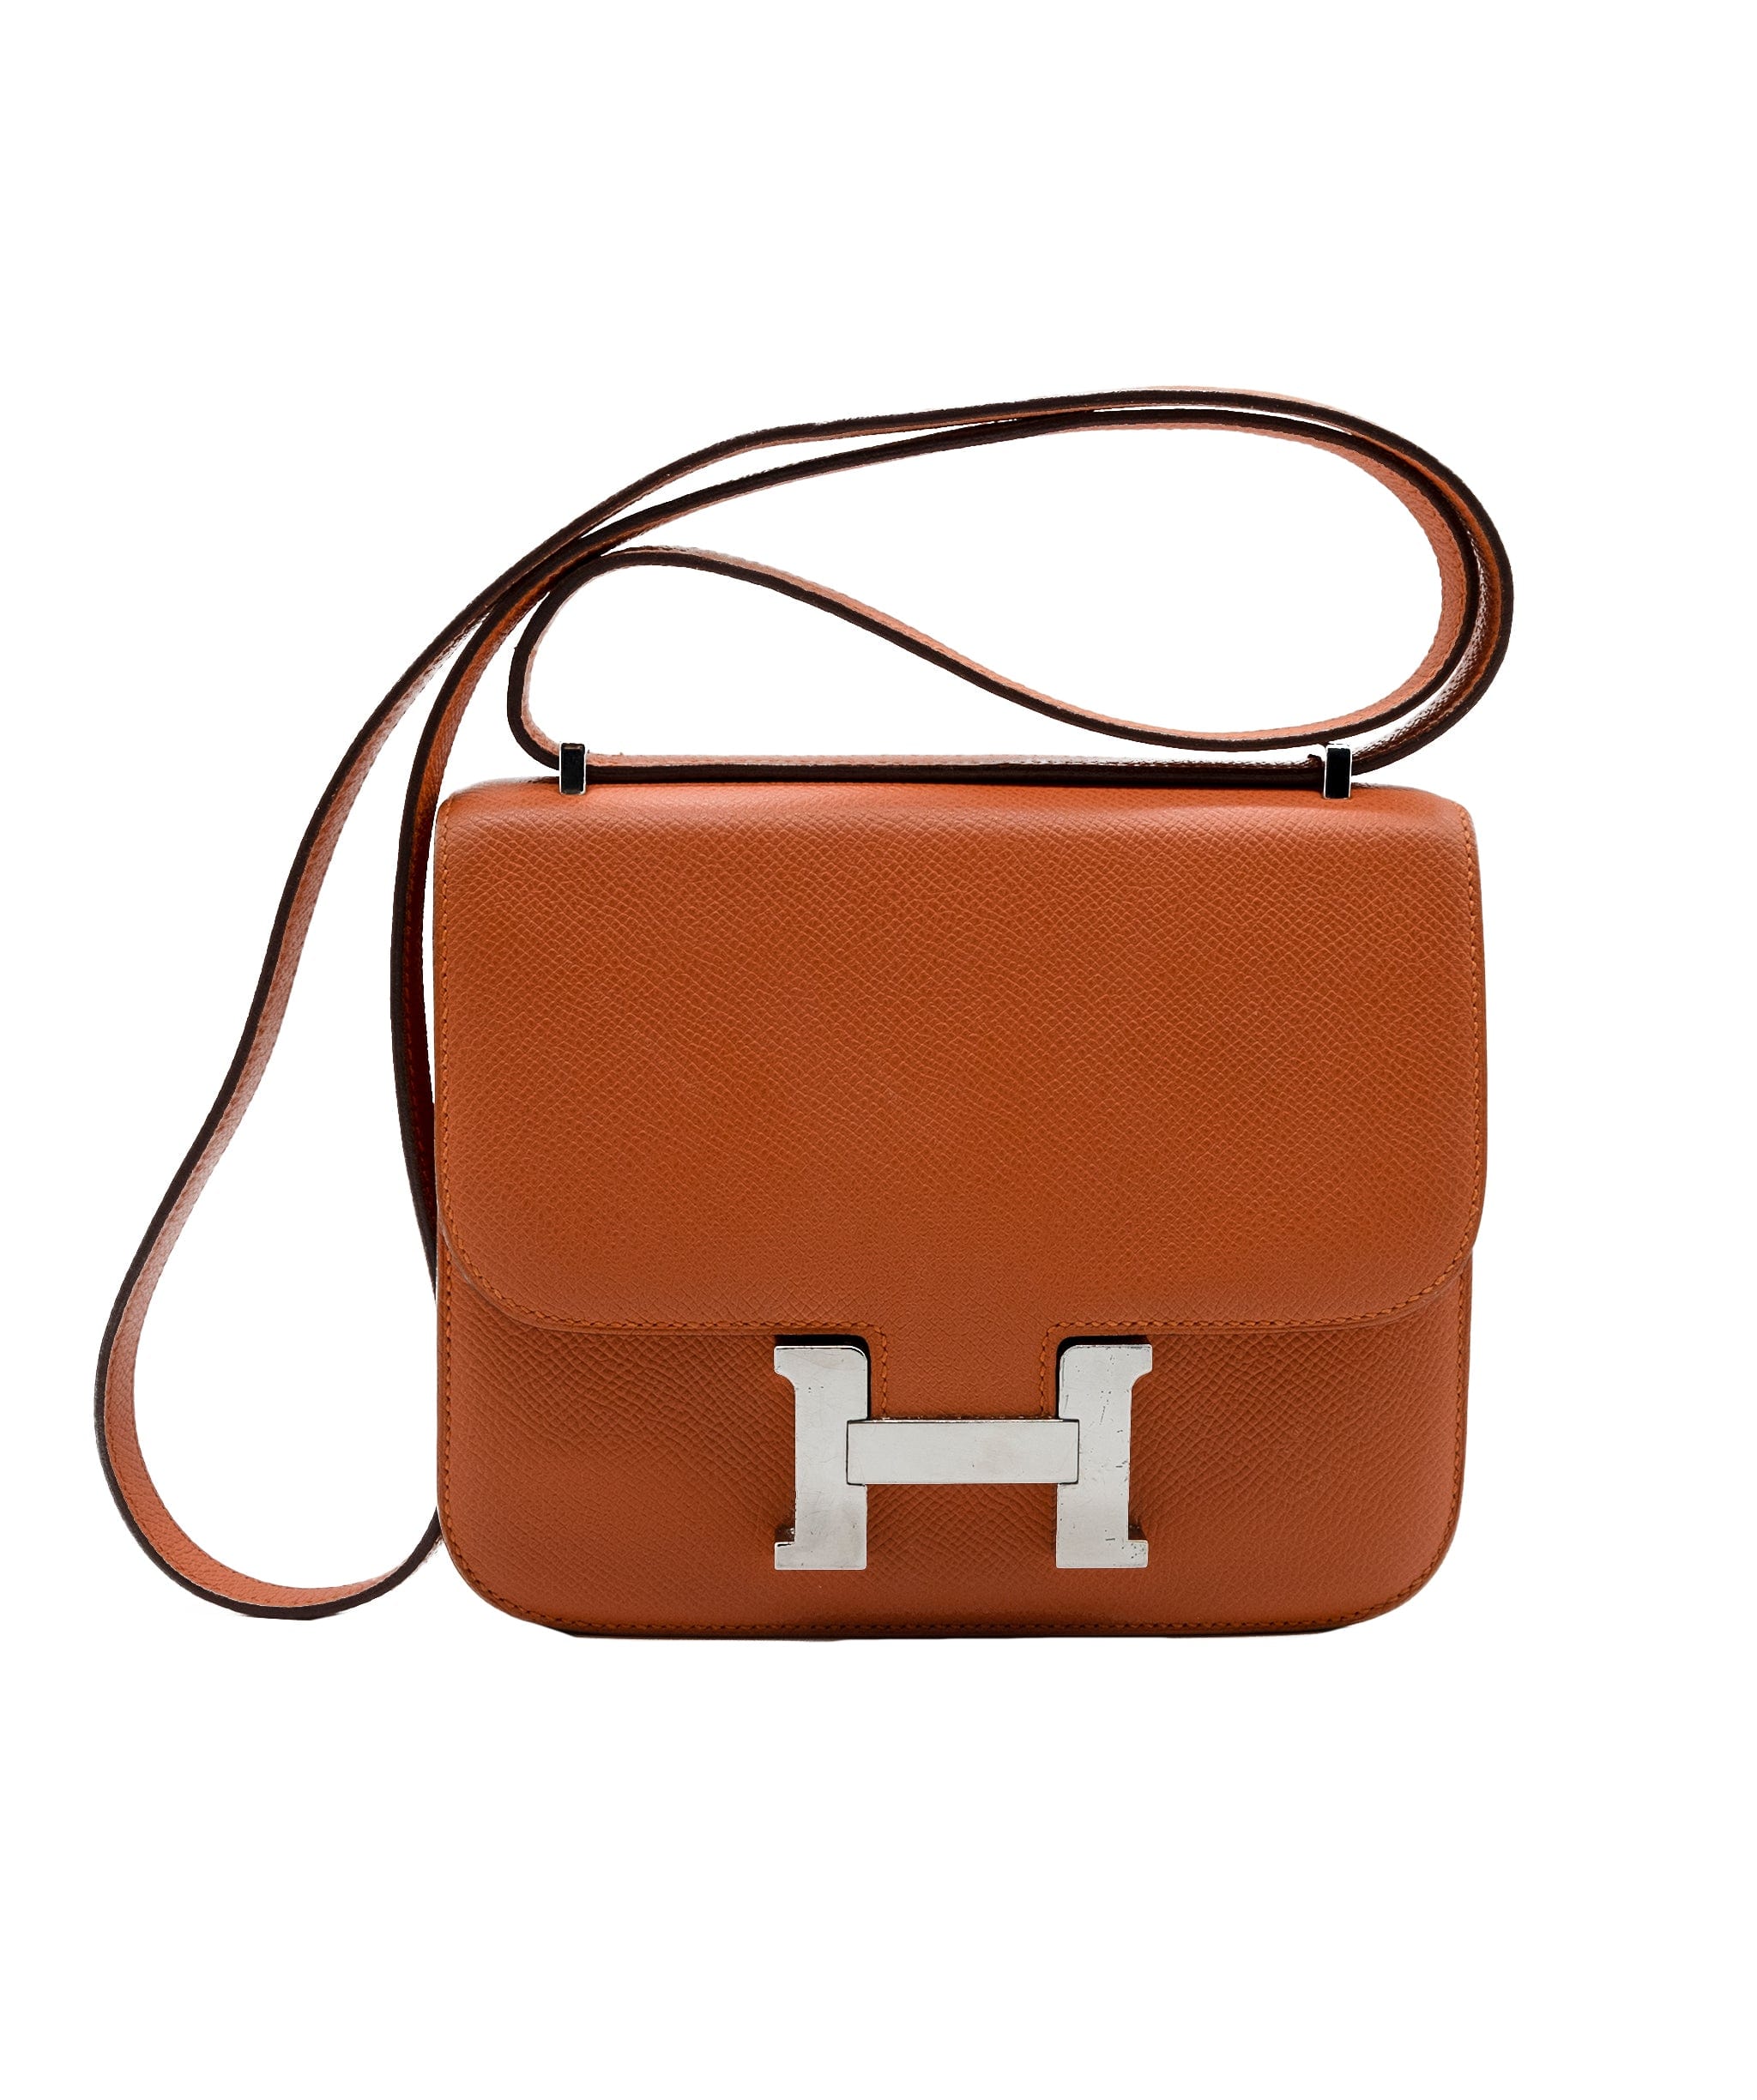 Hermès Constance 18 Bag Classic Orange